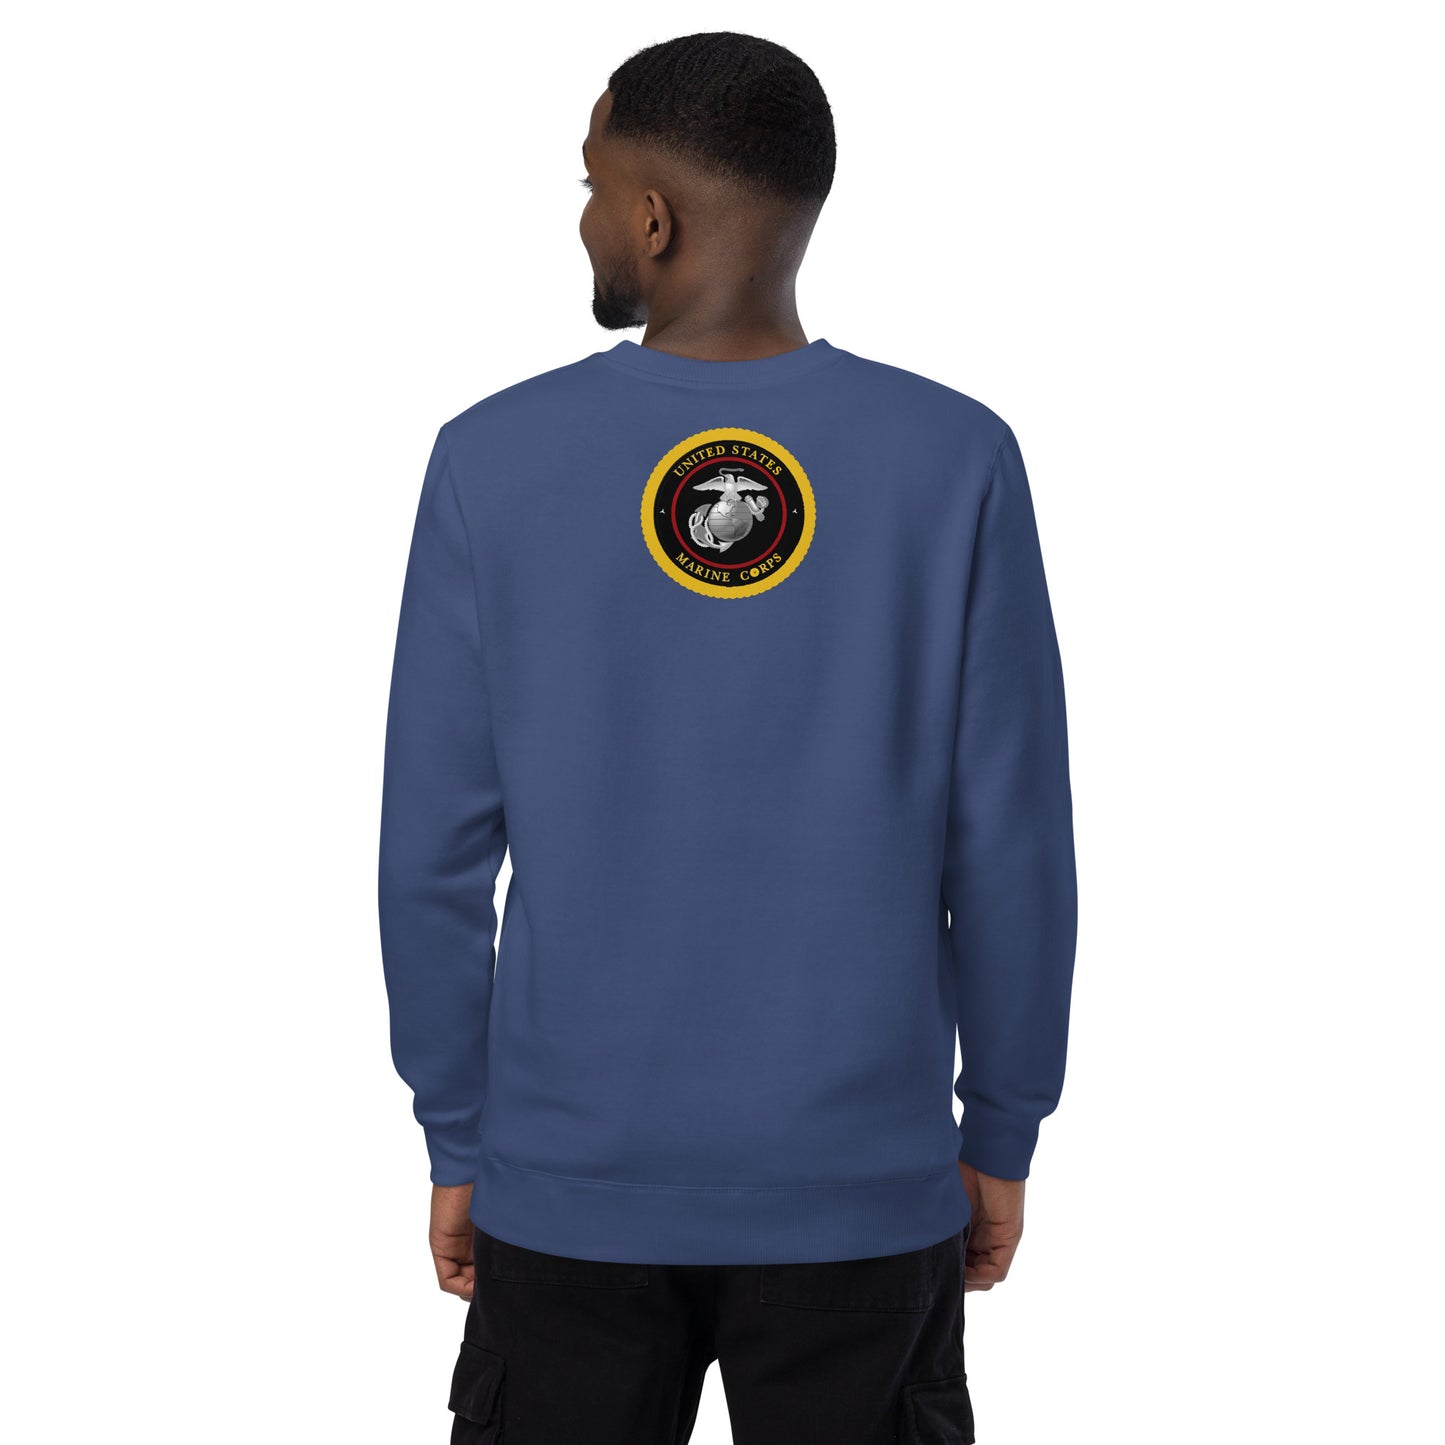 EP Marine fashion sweatshirt